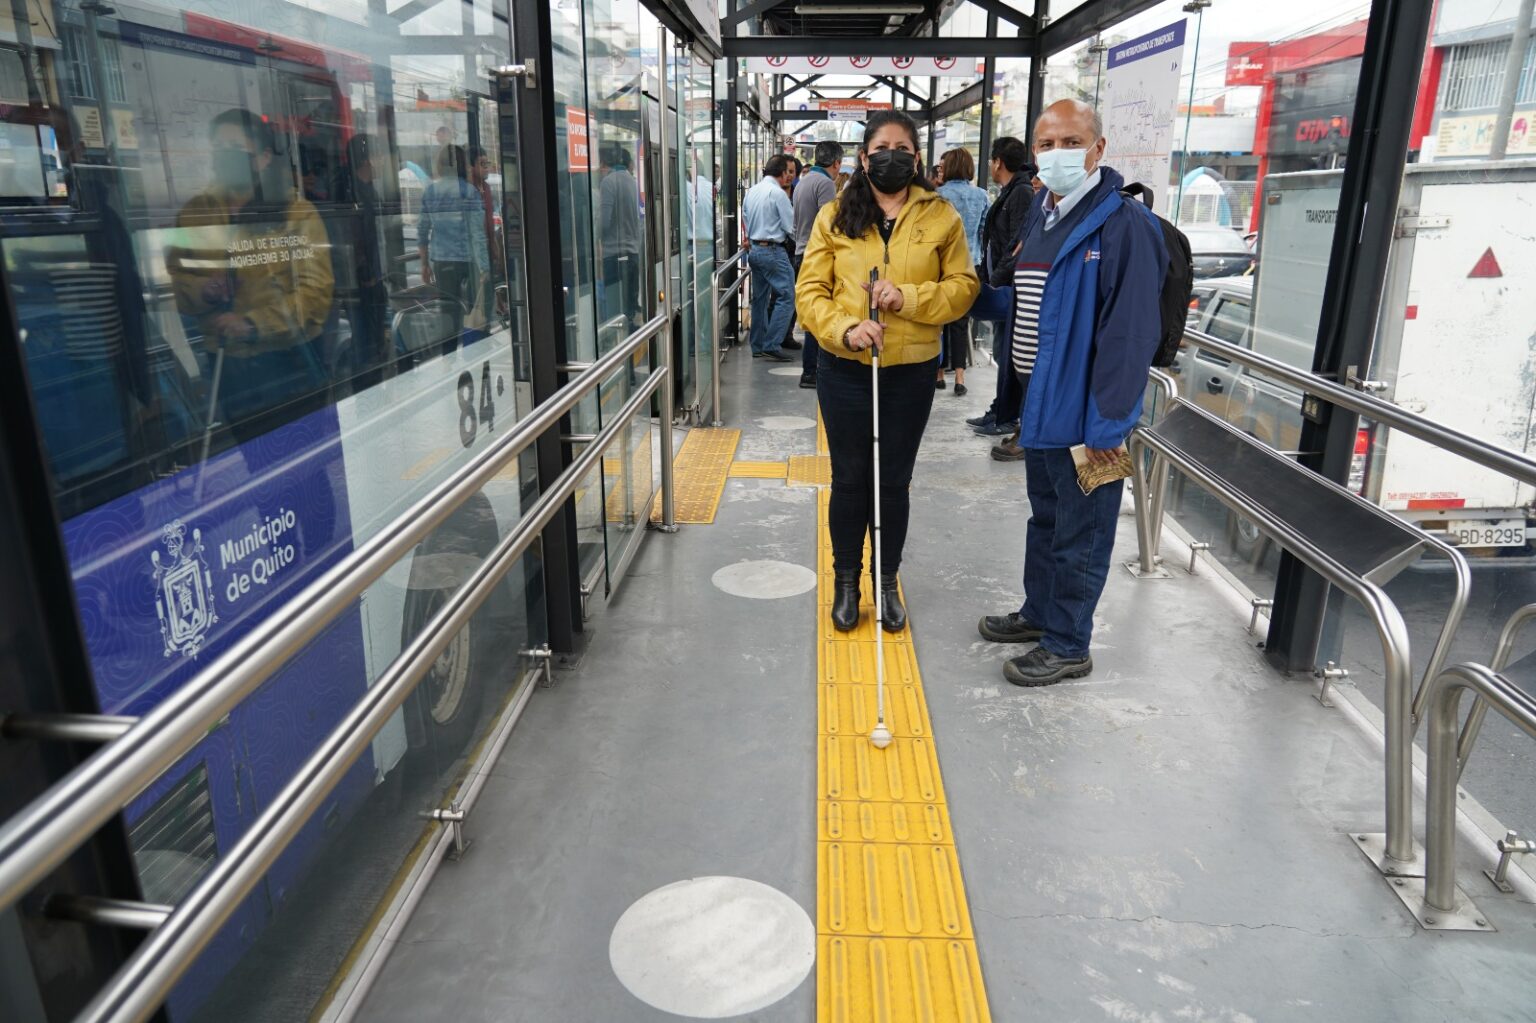 PROBLEMA. Las personas con discapacidad deben vivir a diario los retos de movilizarse en el transporte público.